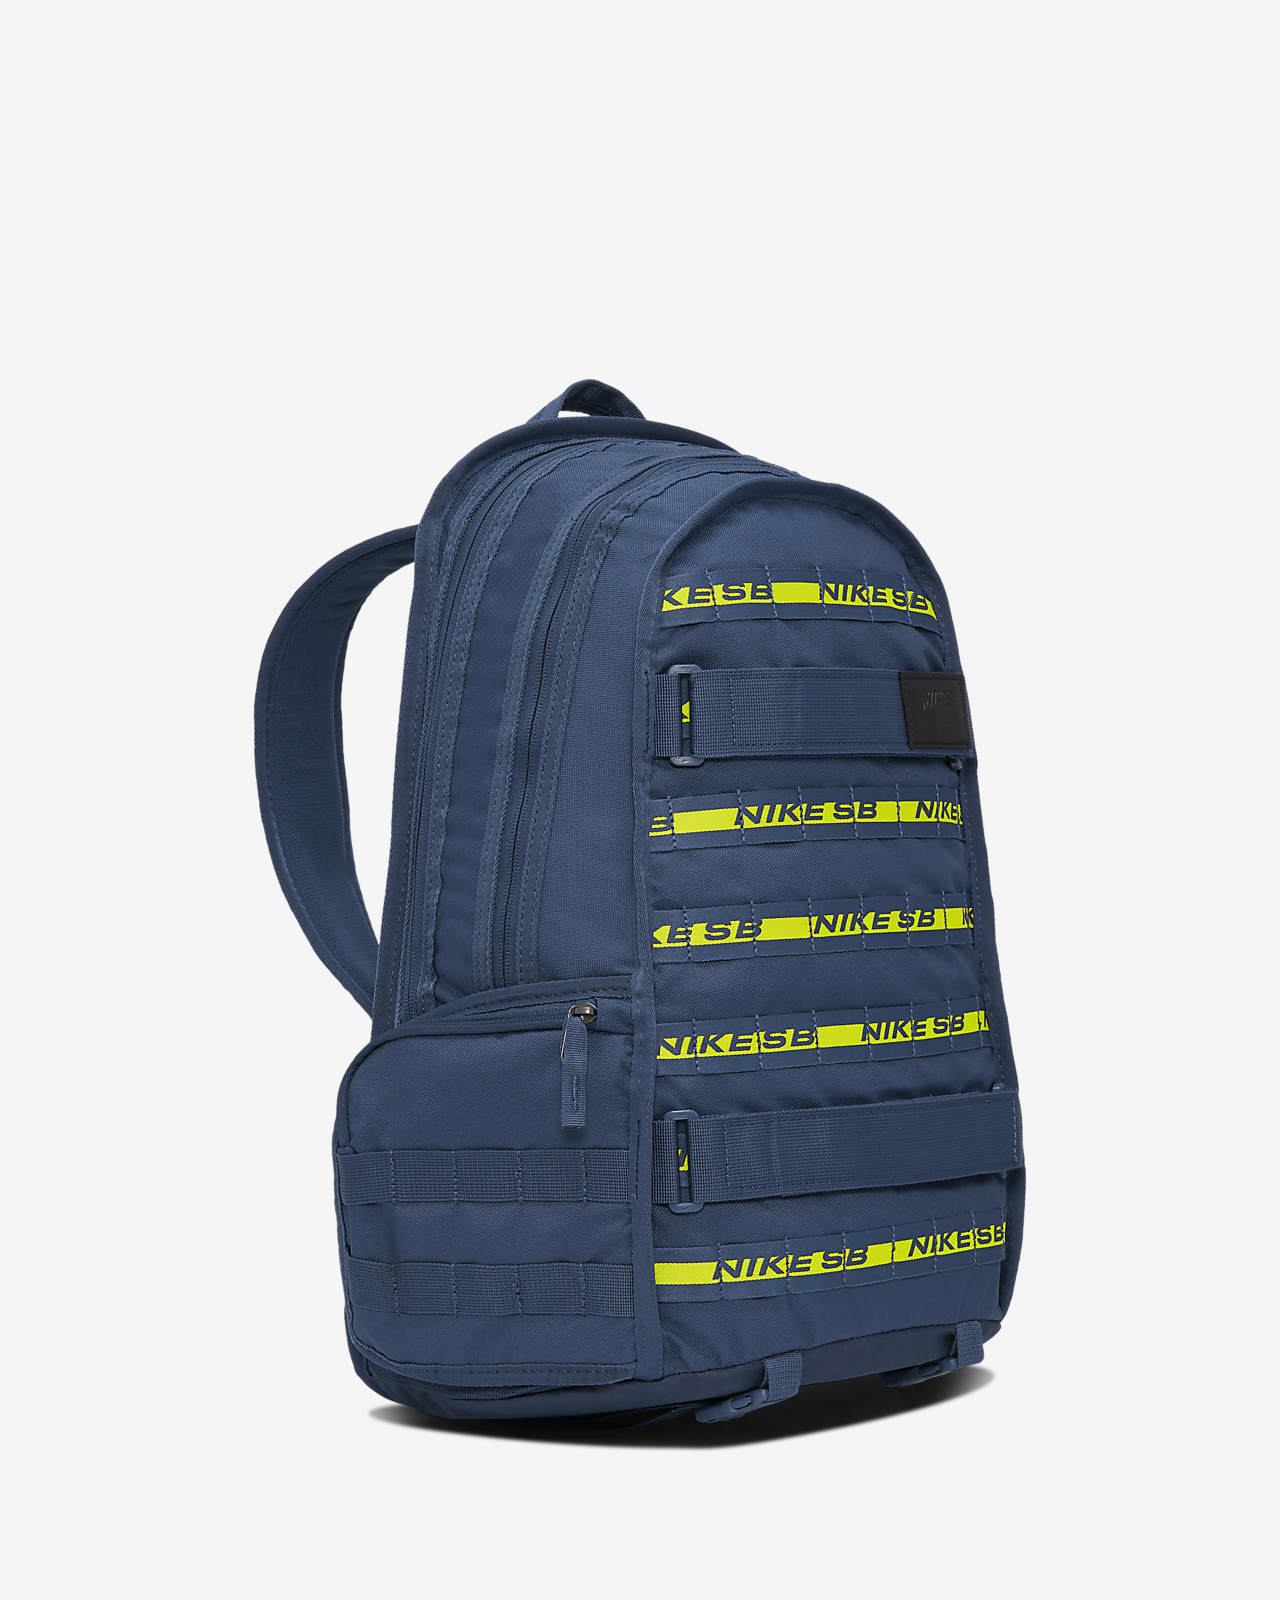 backpack nike sb